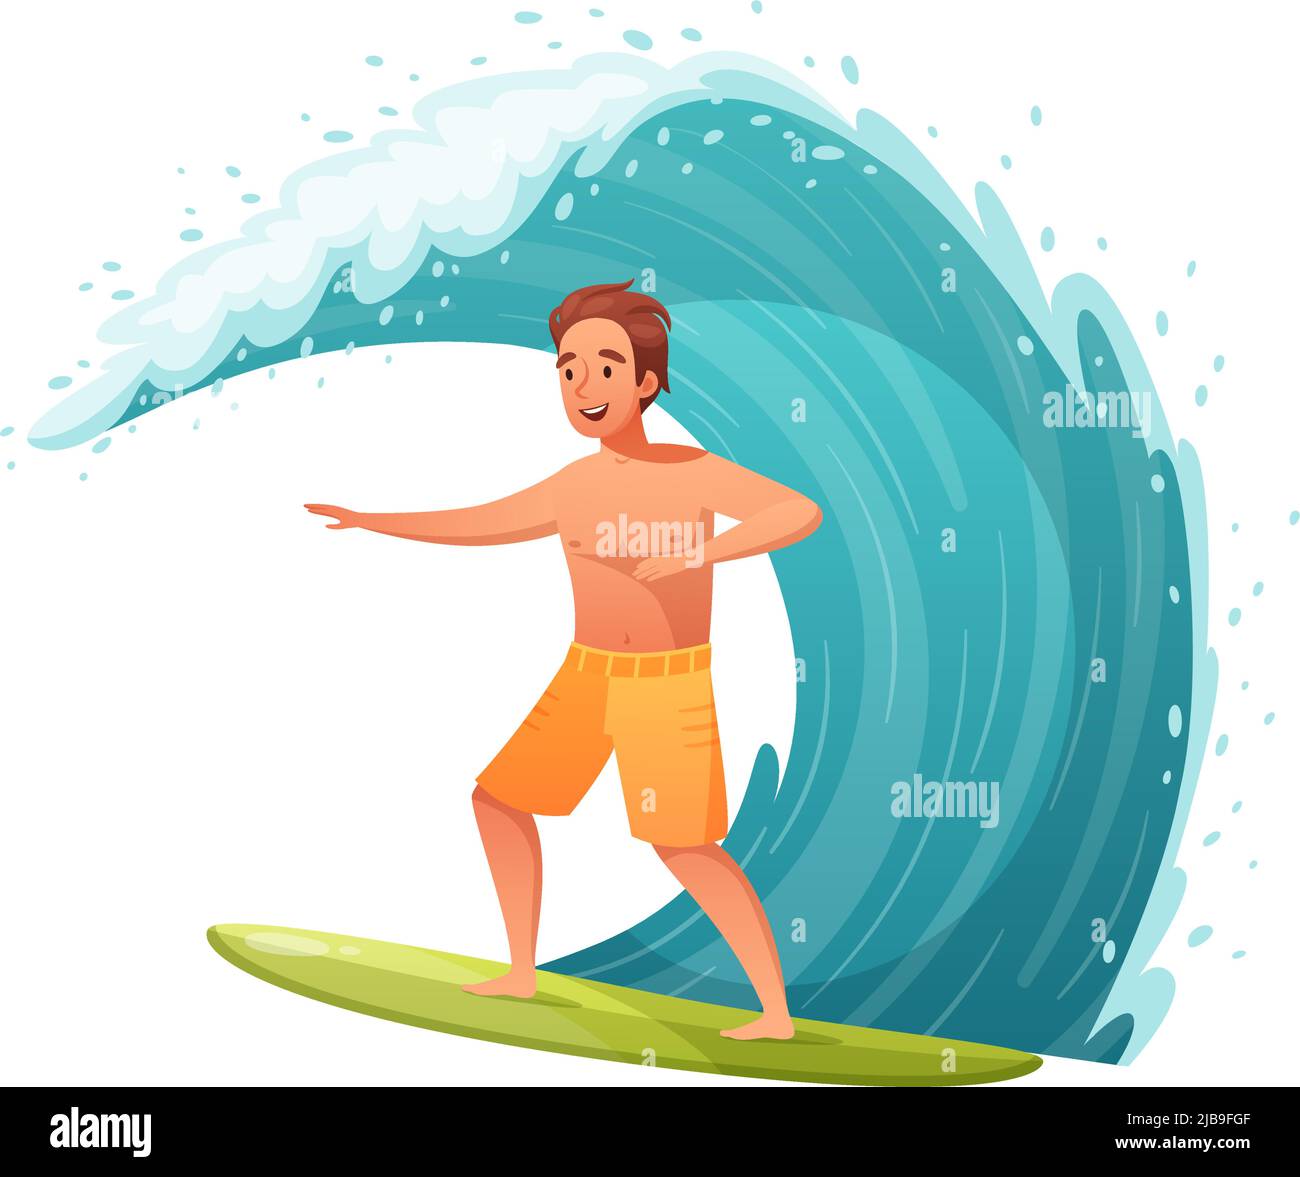 Composition de dessins animés de sports nautiques d'été avec caractère de l'homme debout sur la planche de surf avec illustration de vecteur d'onde Illustration de Vecteur